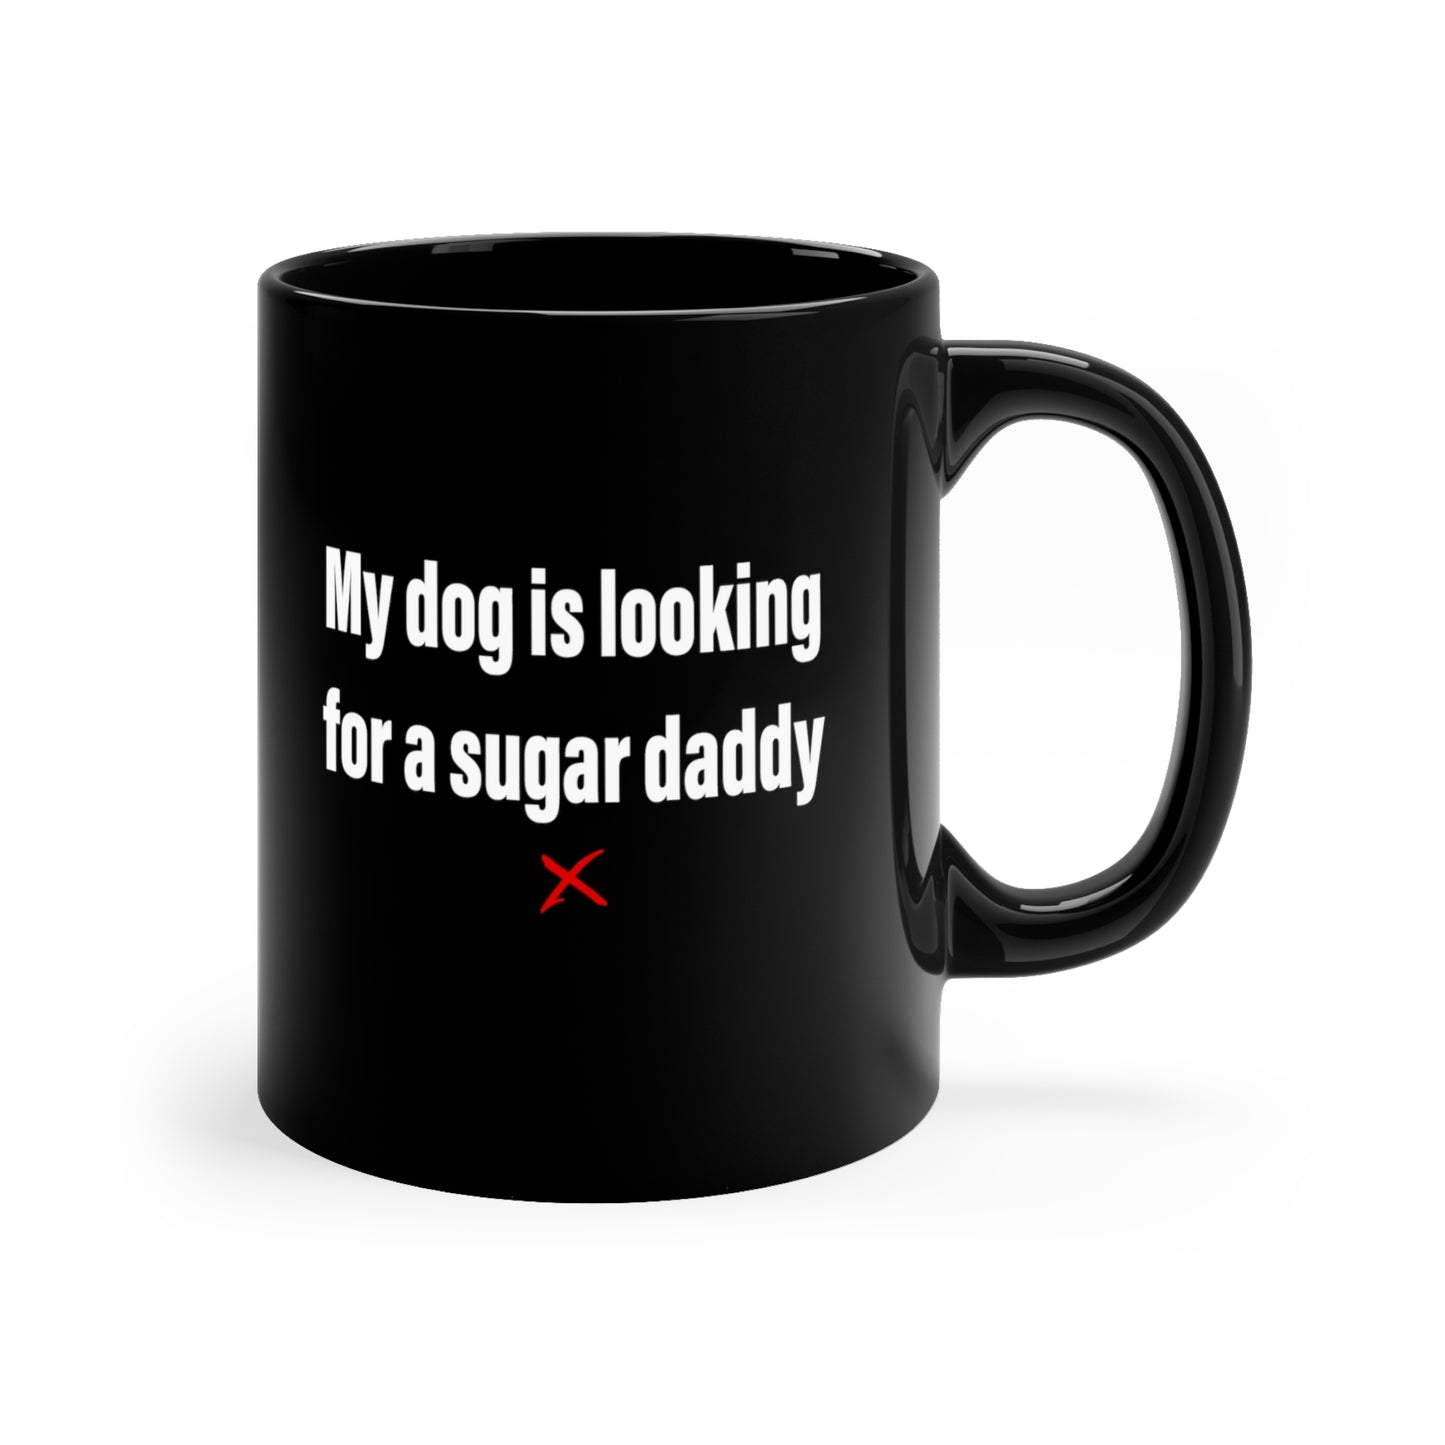 My dog is looking for a sugar daddy - Mug